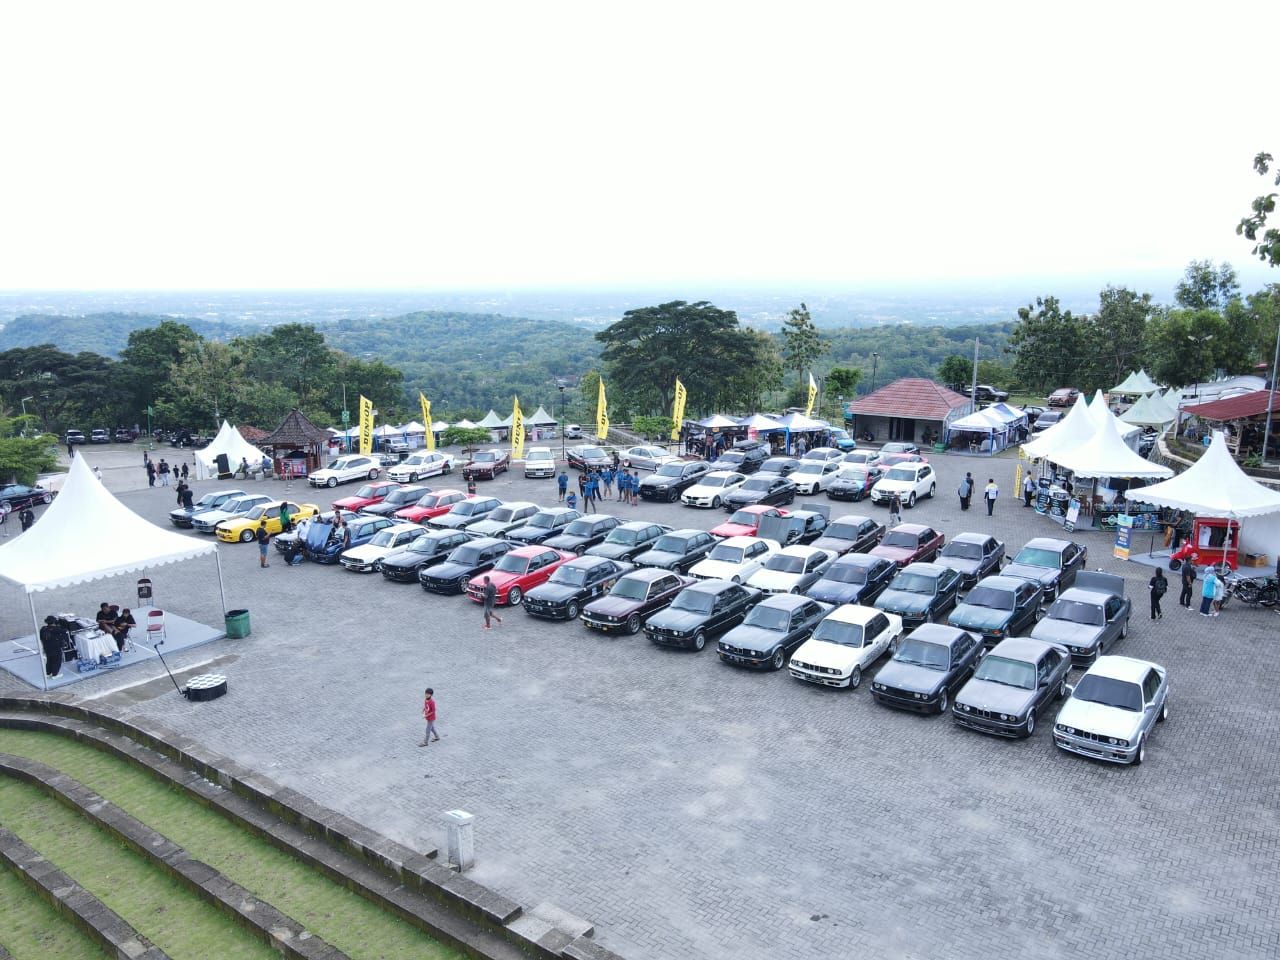 Jajaran mobil BMW meramaikan Indonesian Bimmerfest 2022 di Yogyakarta, 25-26 November 2022.